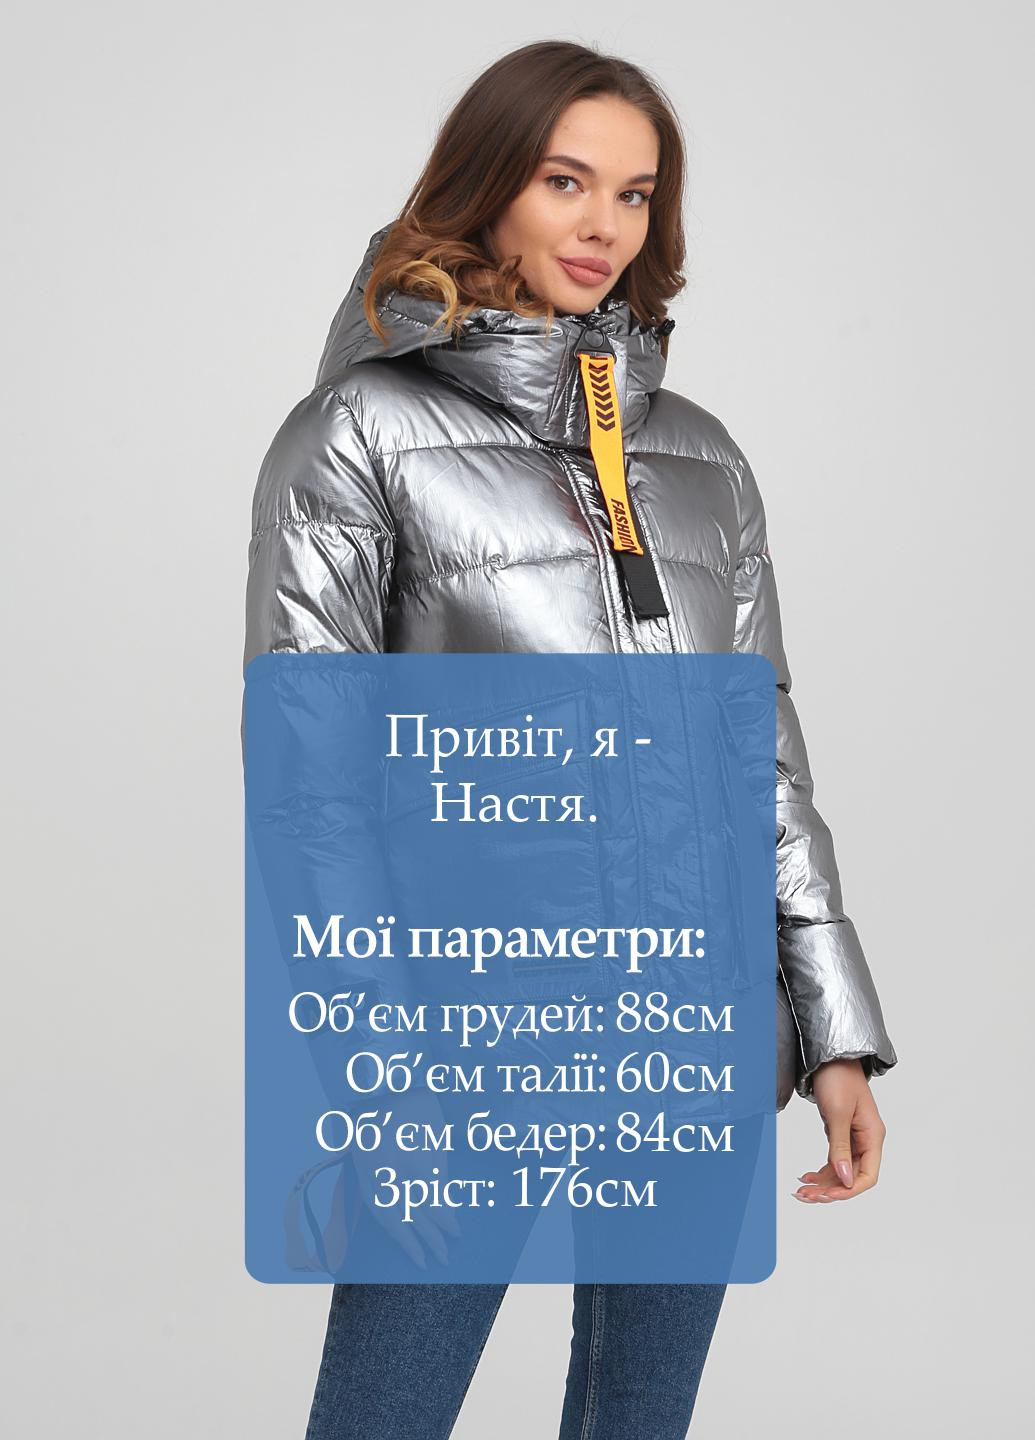 Серебряная зимняя куртка Olanmear